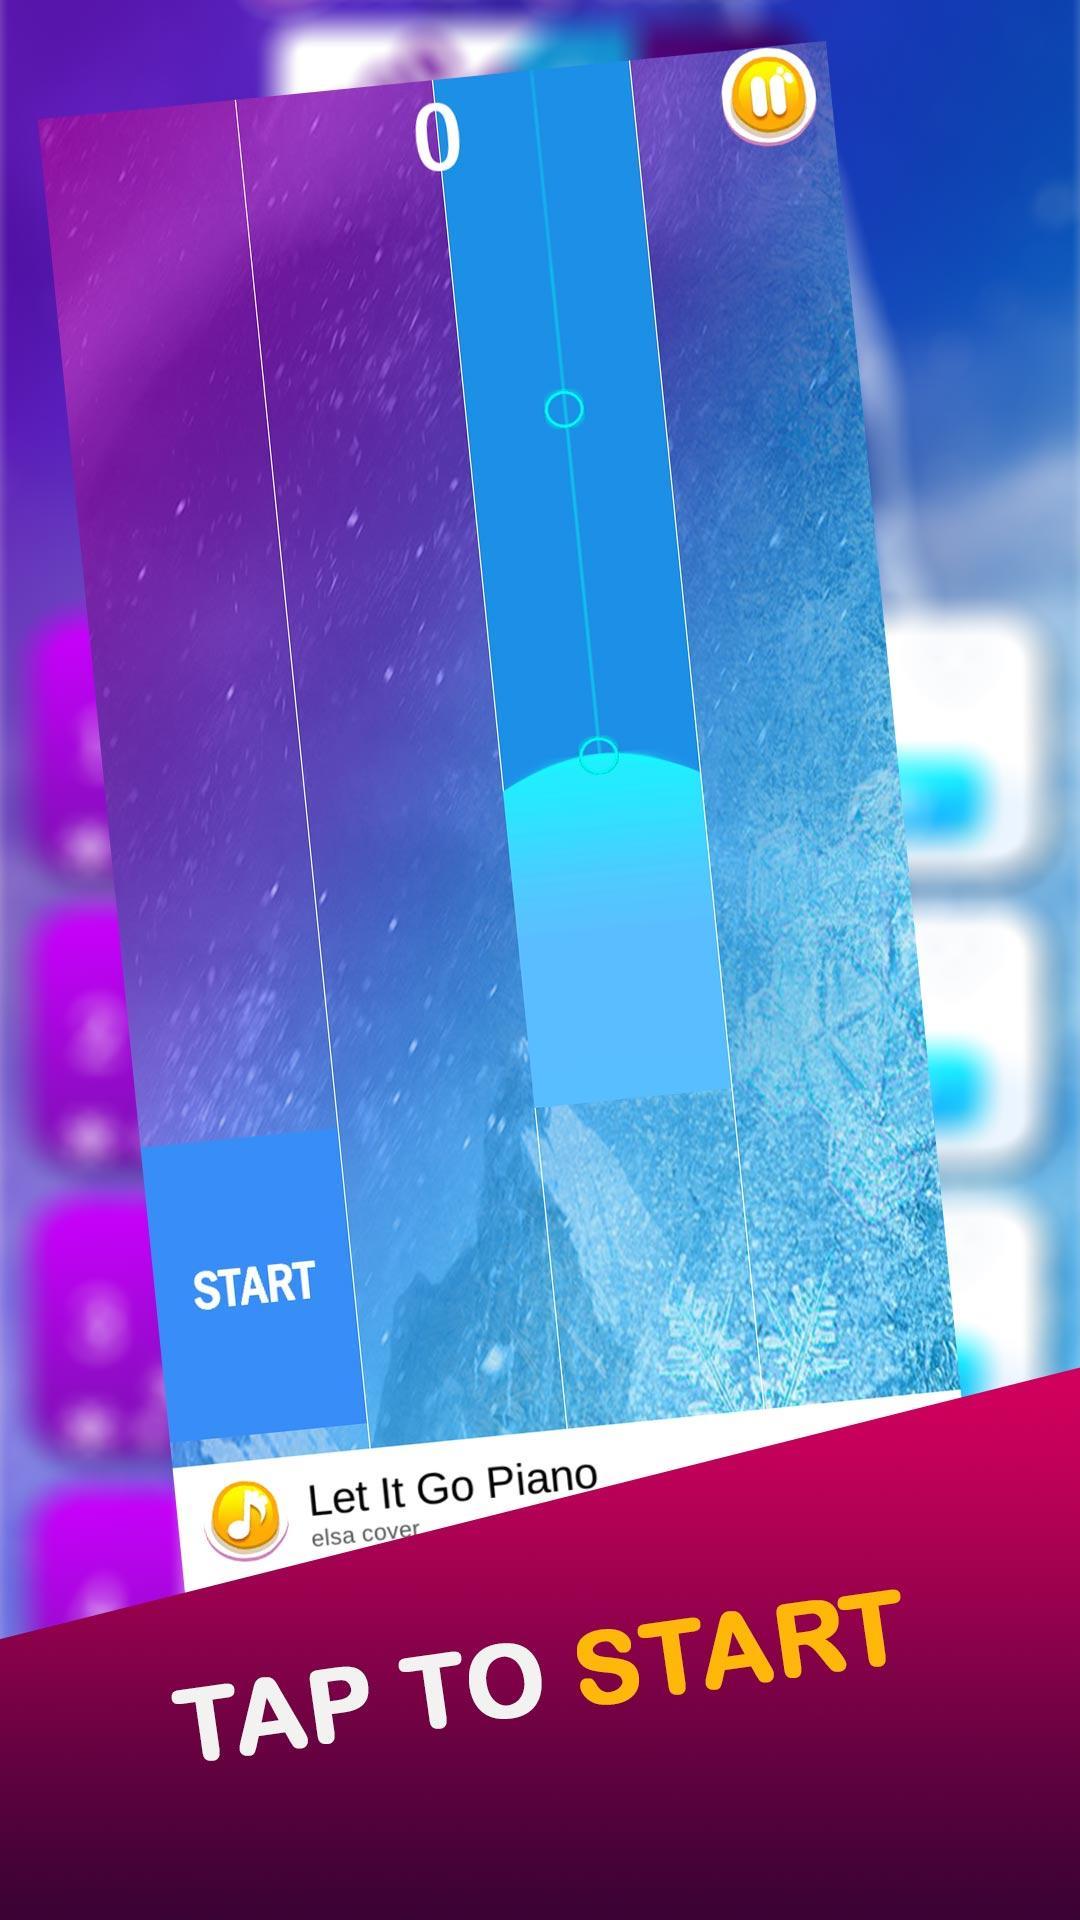 Piano Princess elssa 2 games 3.1 Screenshot 4